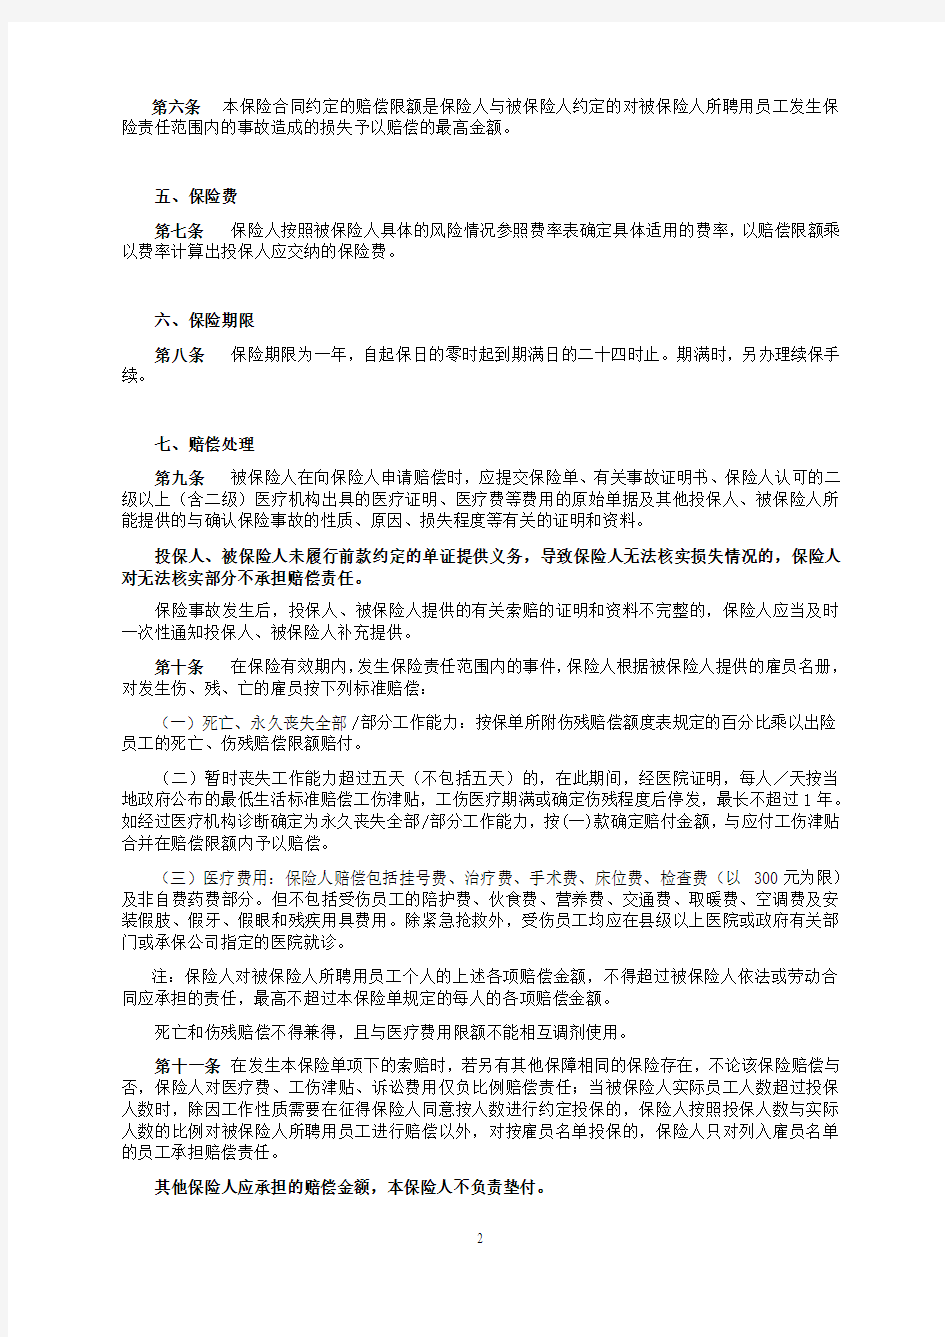 中国人民财产保险股份有限公司雇主责任保险条款(1999版)